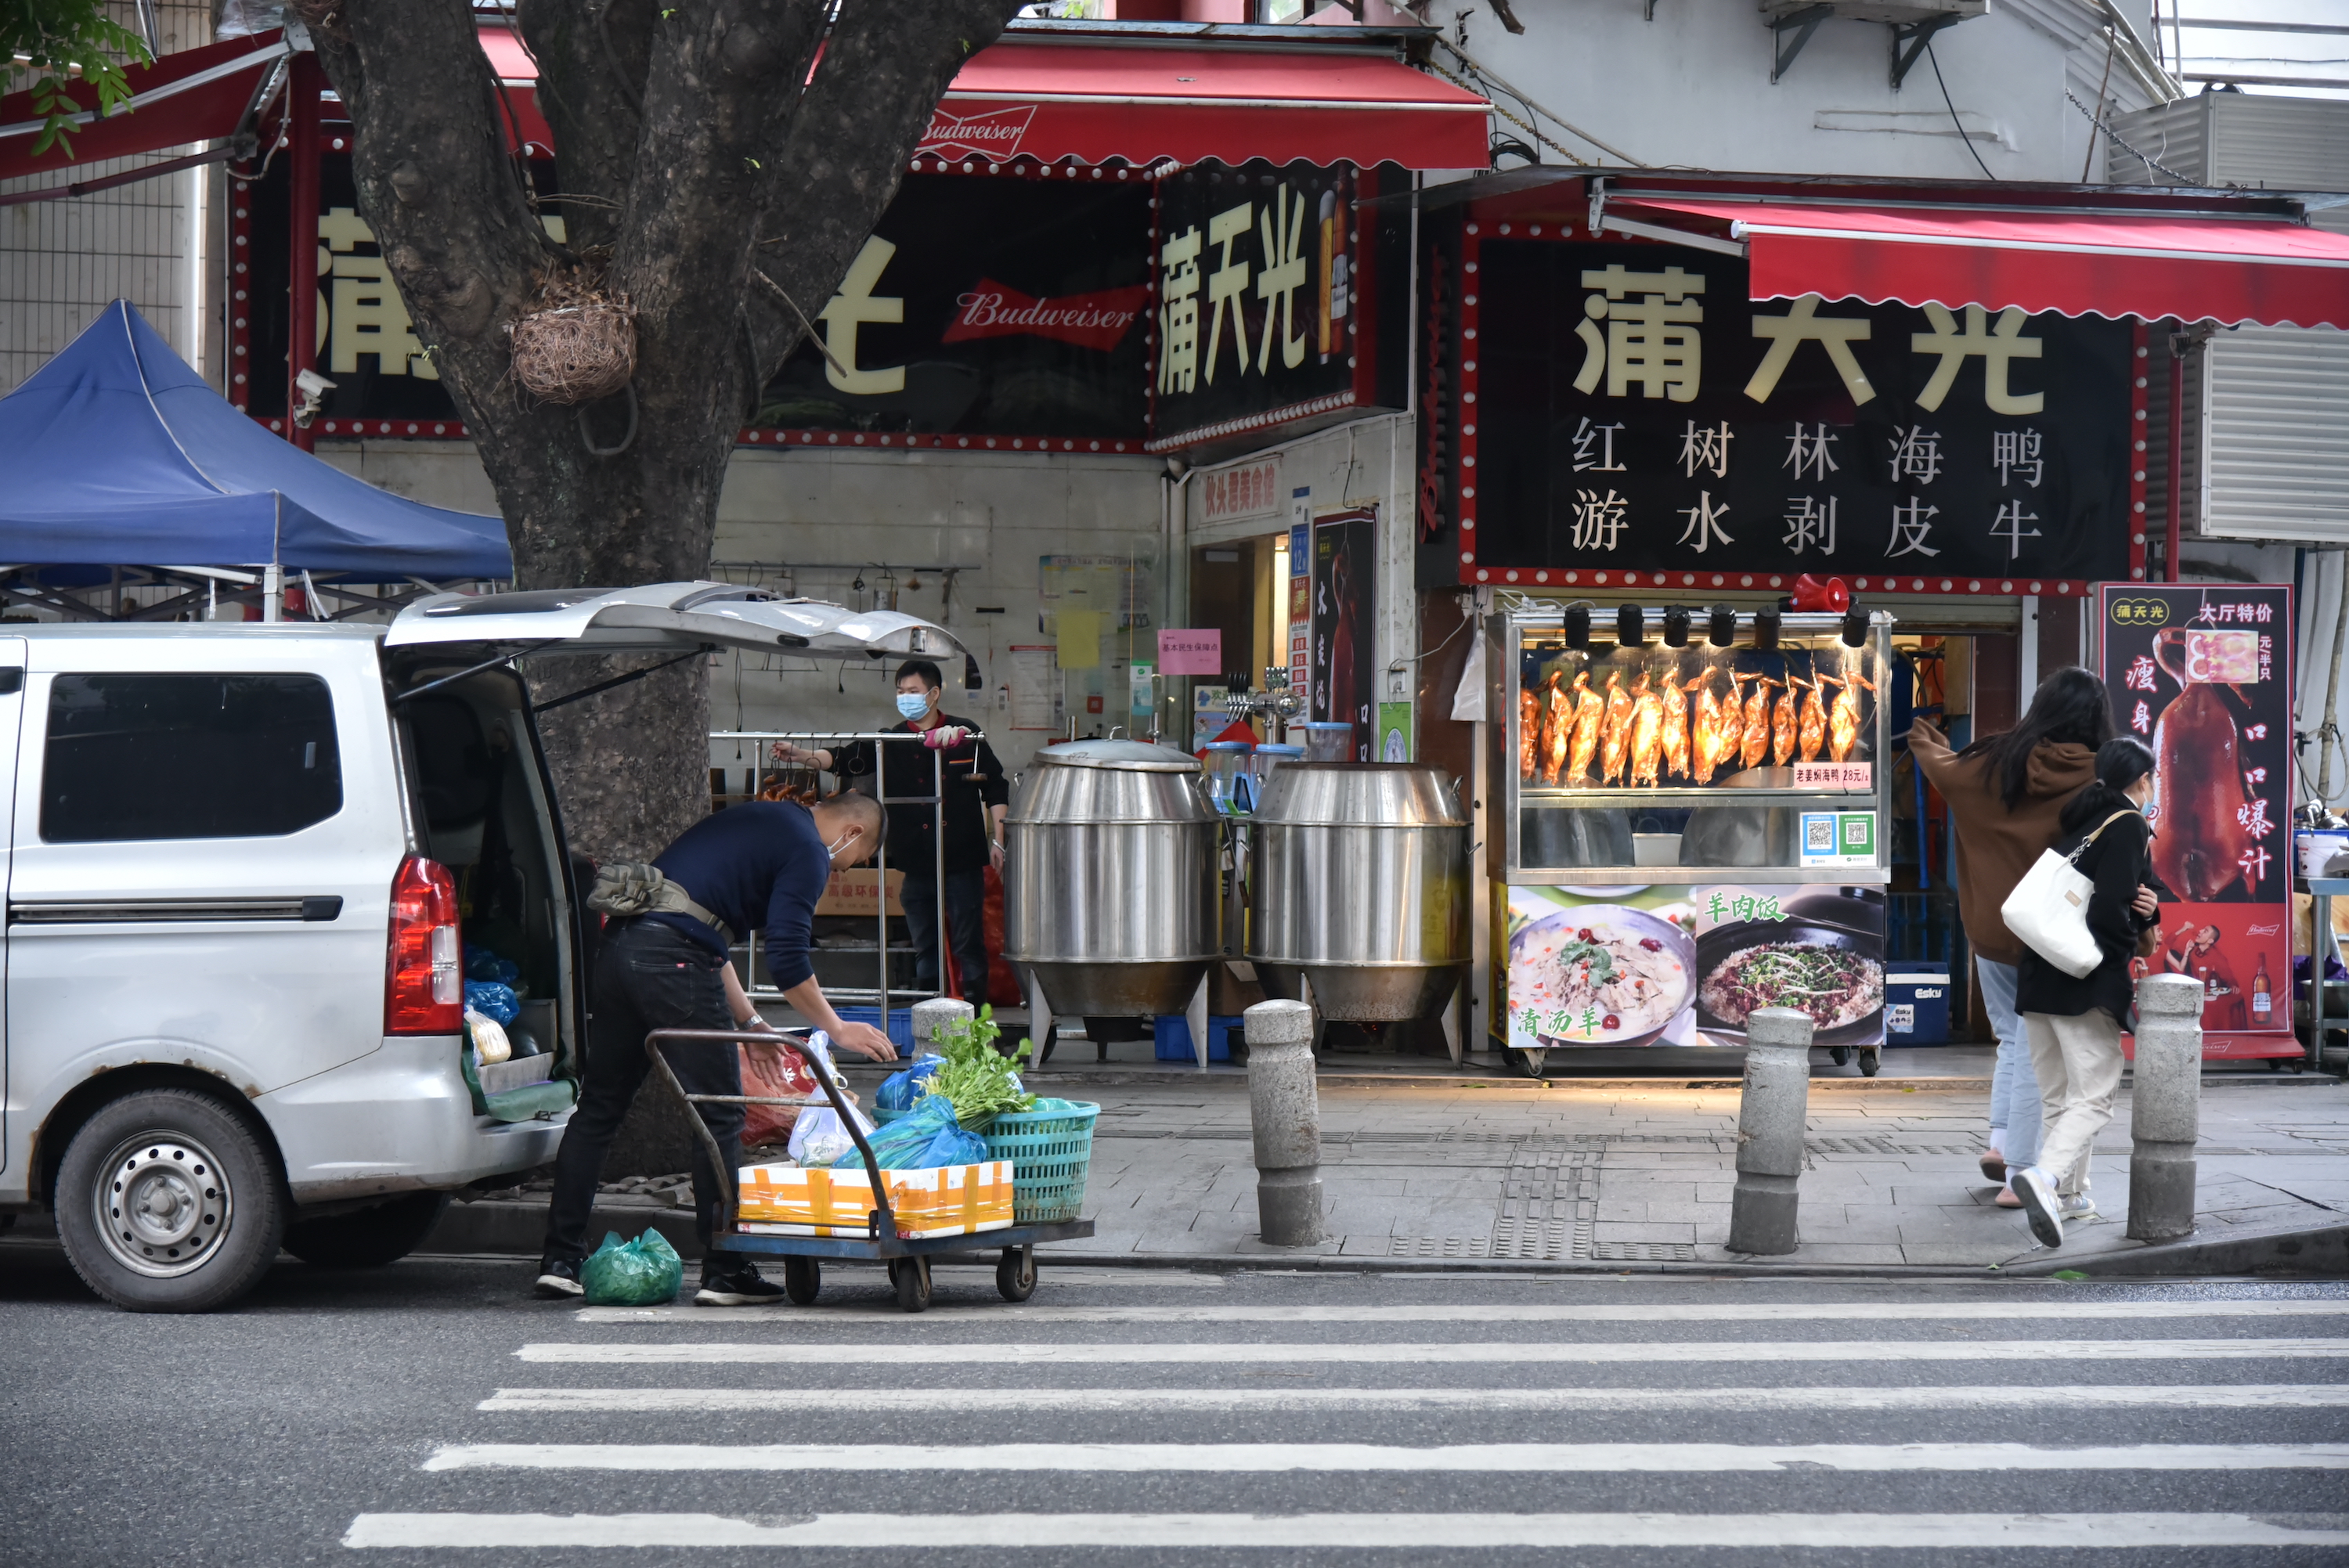 广州多区解除管控 烧腊档、理发店回归市民生活